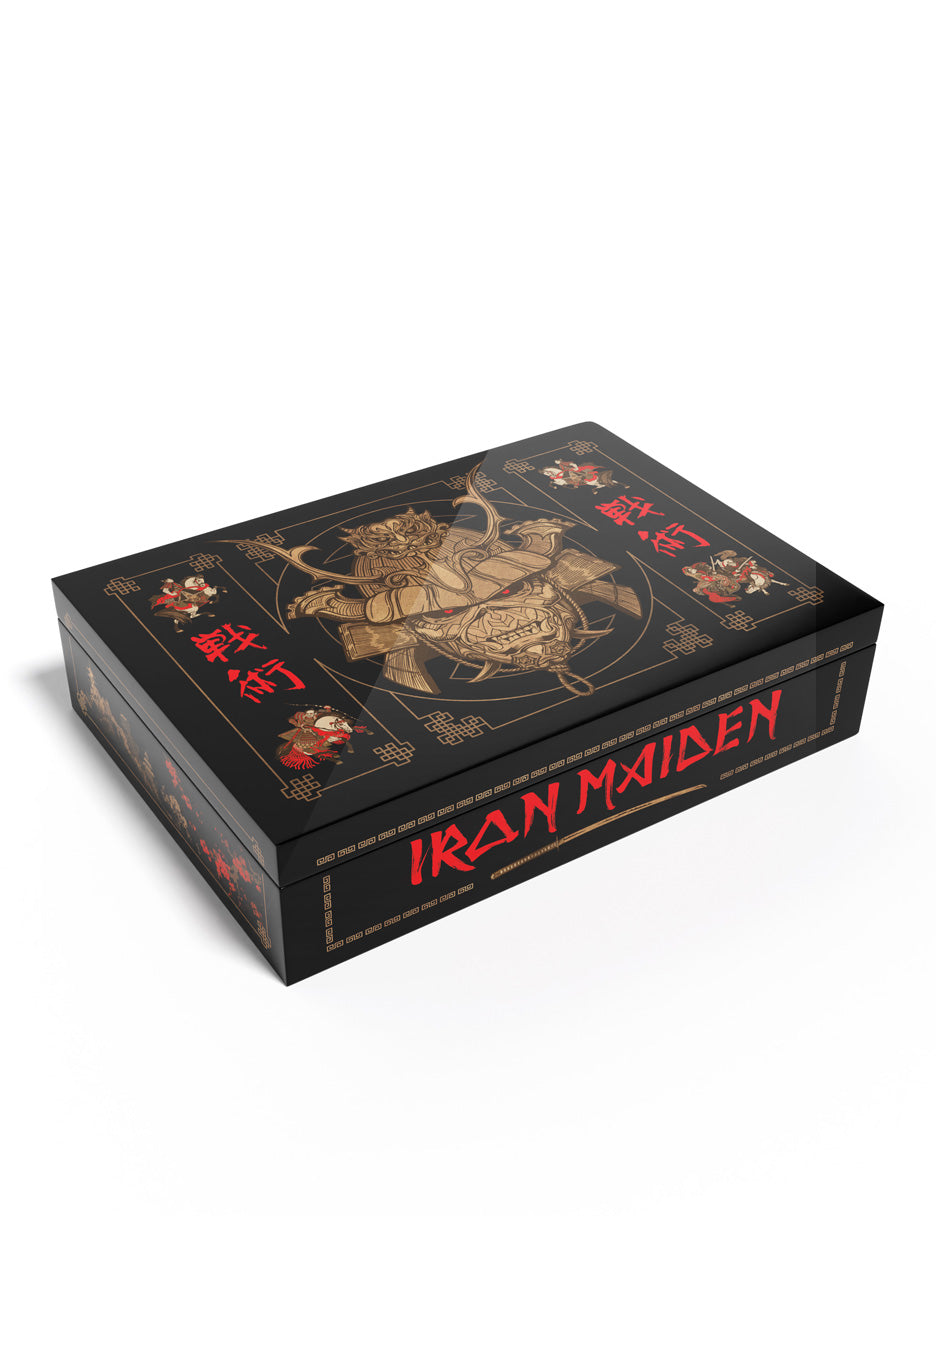 Iron Maiden - Senjutsu Super Deluxe - Boxset